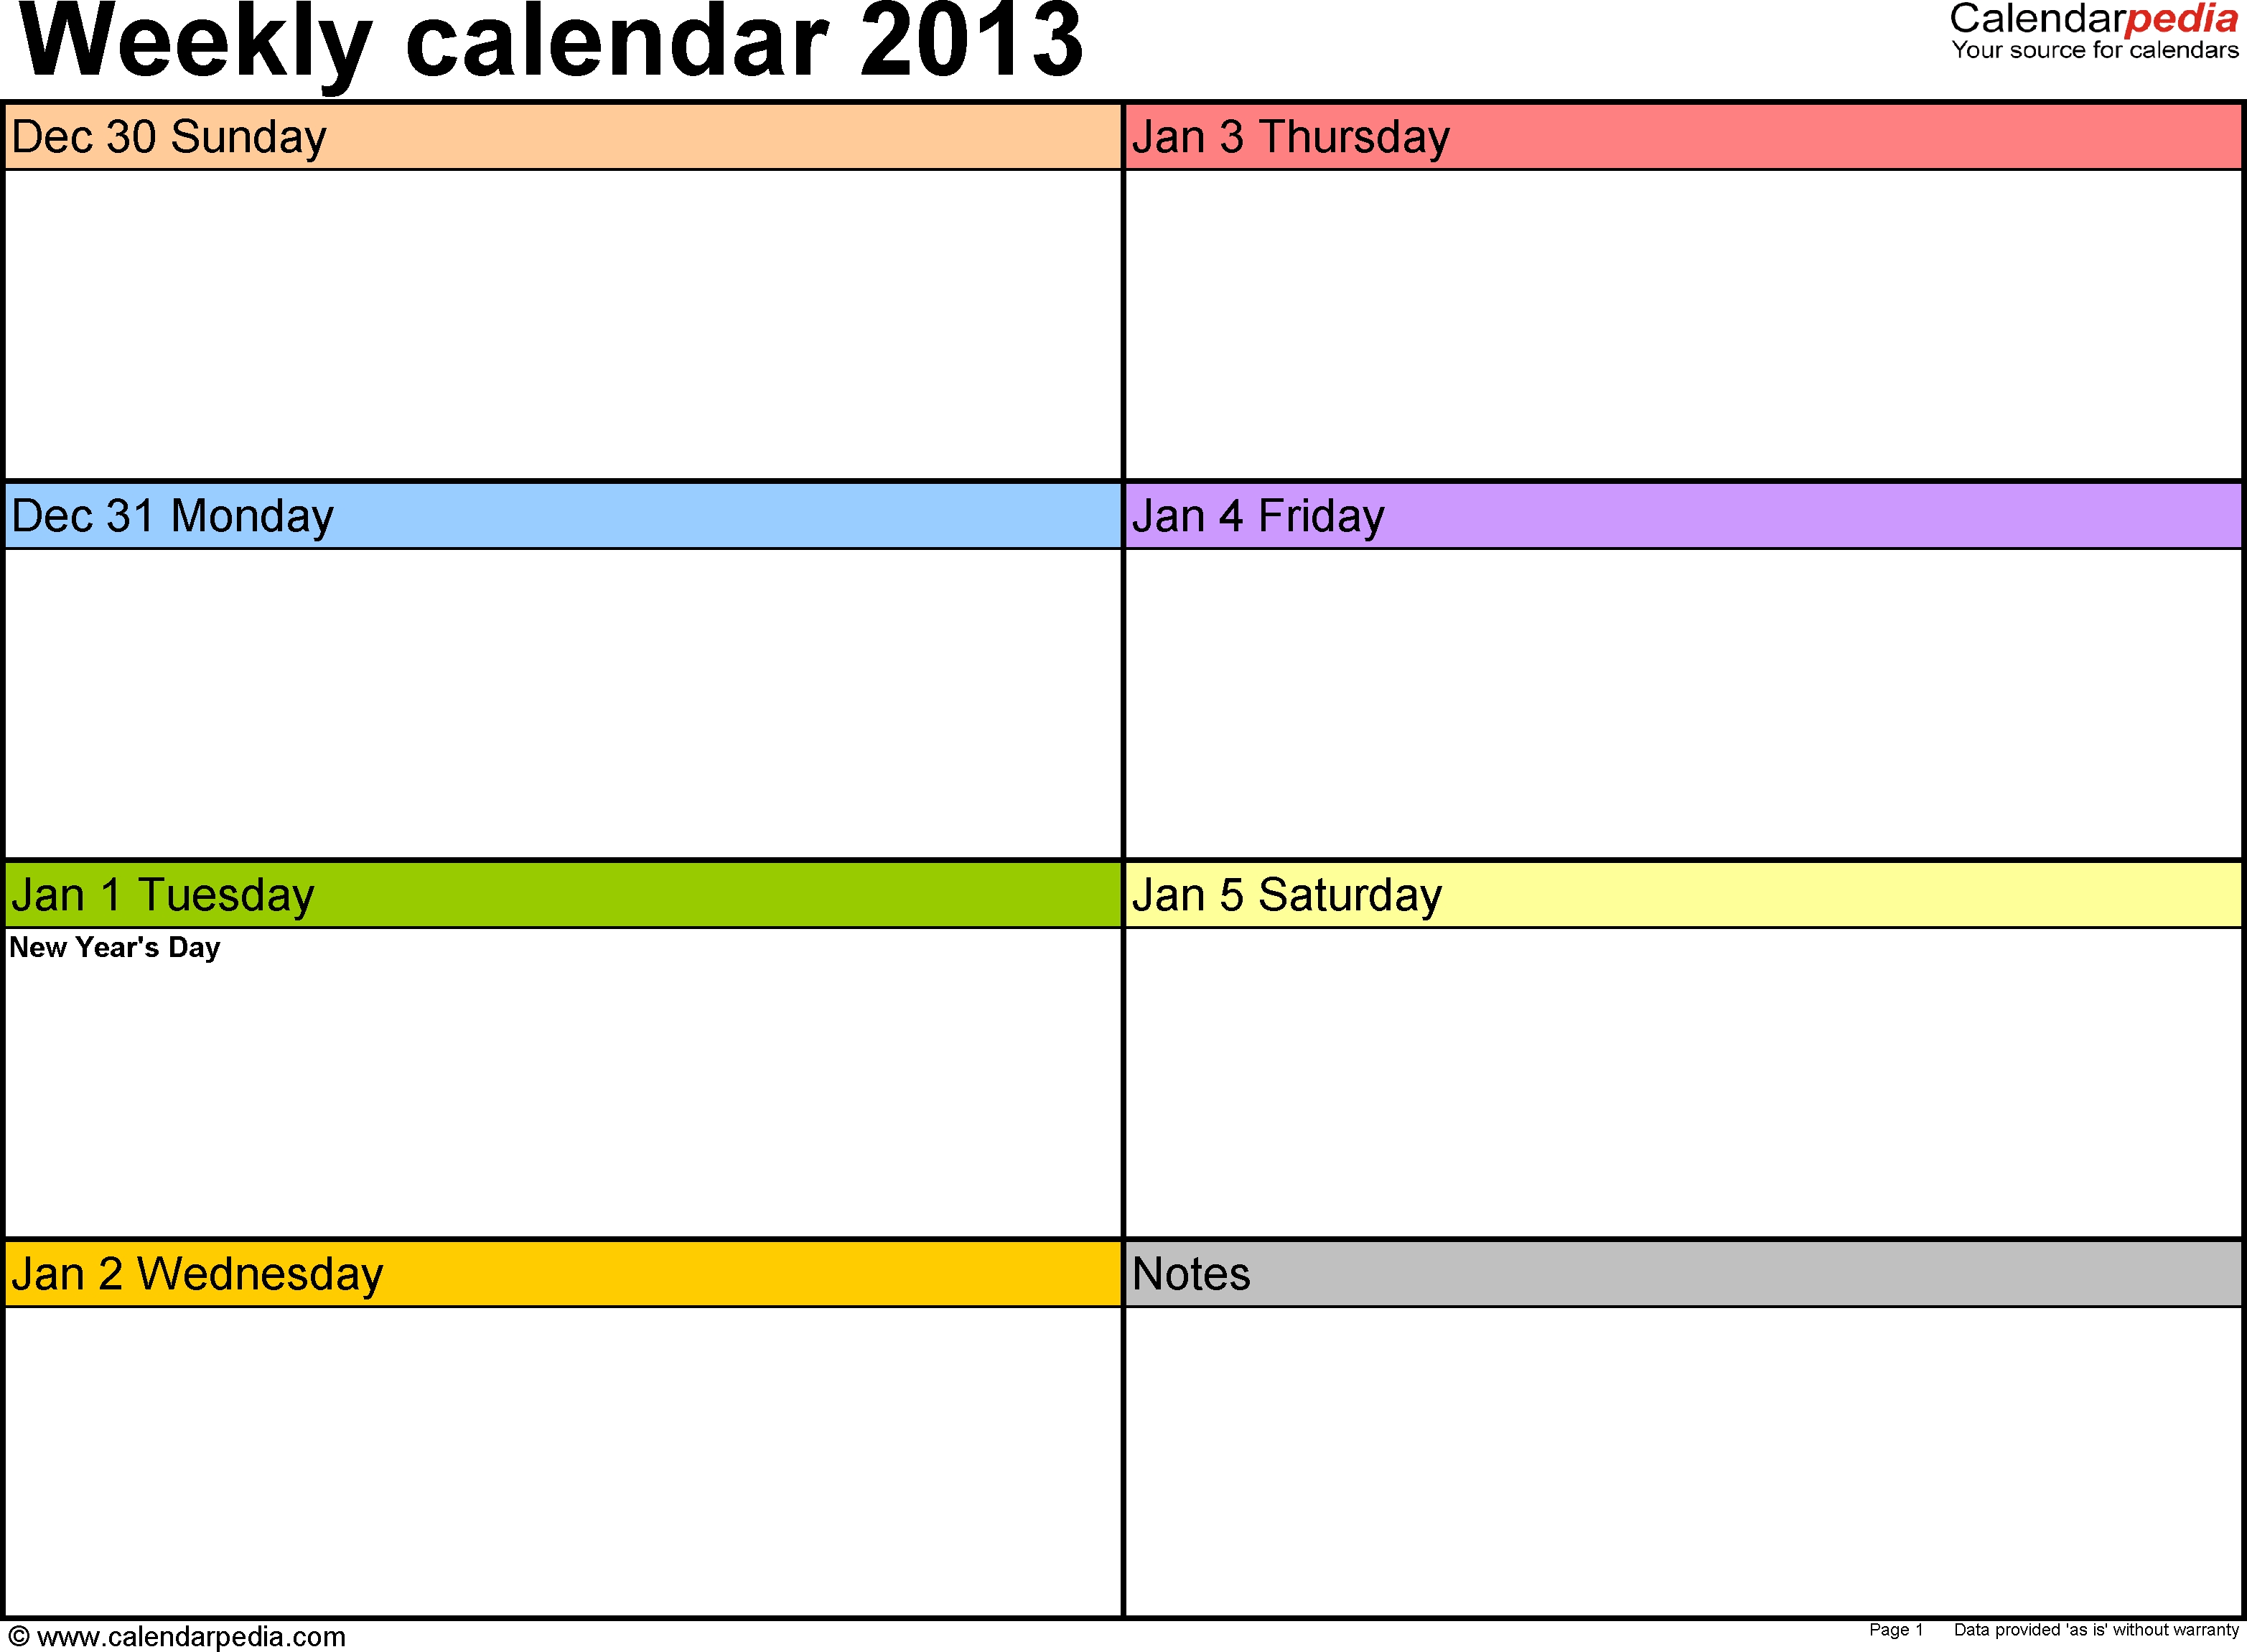 Schedule Template Ay Work Week Calendar Weekly For Excel Free 5 Day Week Calendar Template Excel